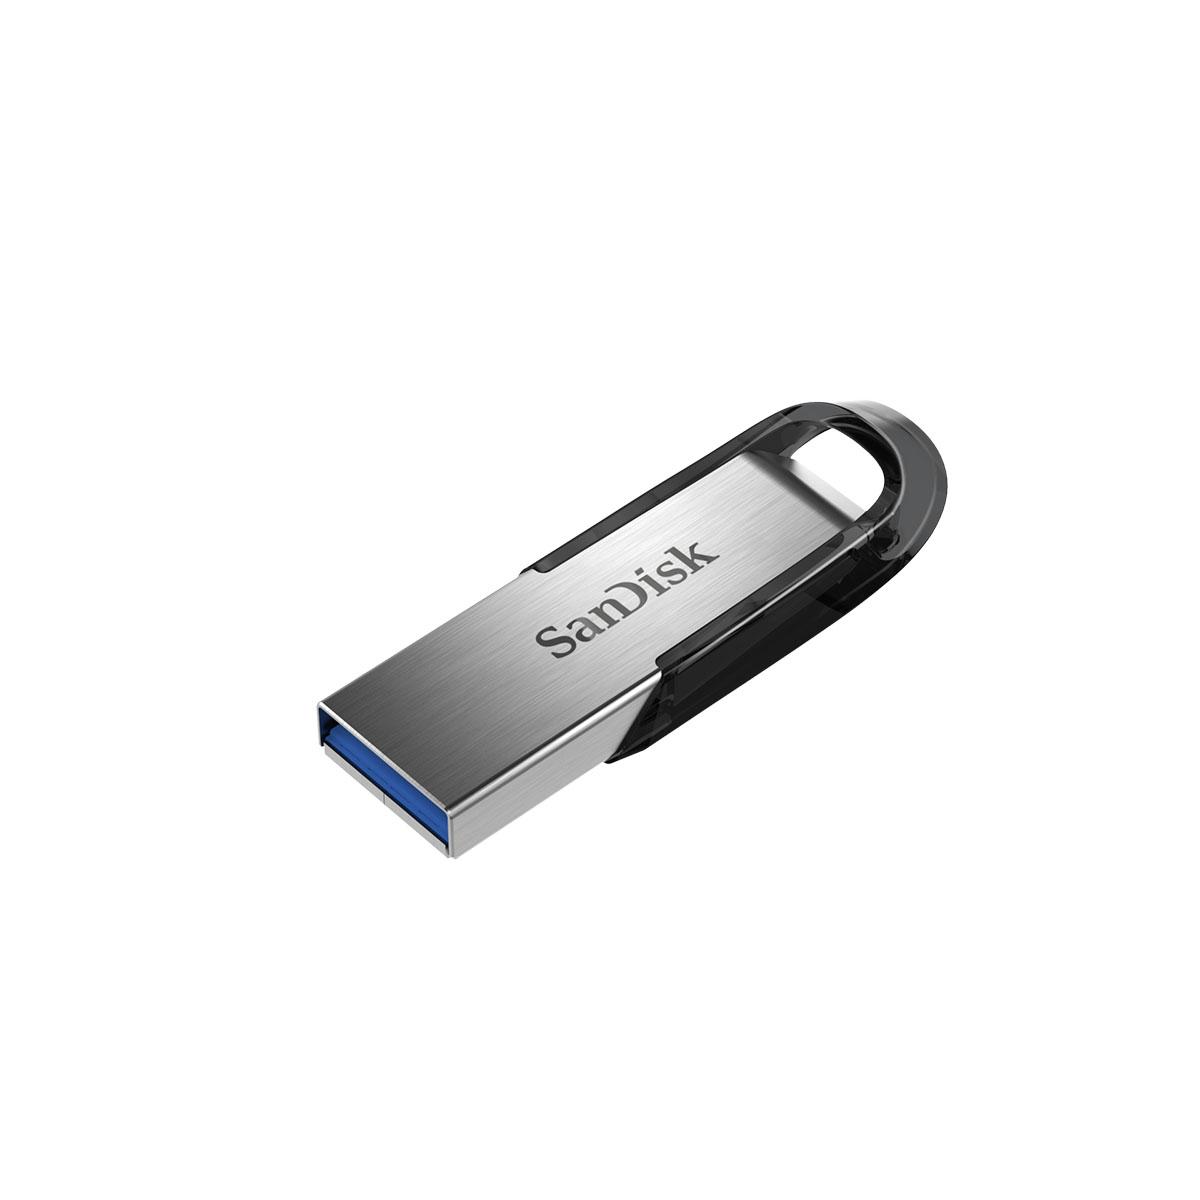 Doncella Correa Impresionante SanDisk Ultra Flair - Unidad flash USB - 128 GB - USB 3.0SDCZ73-128G-G46